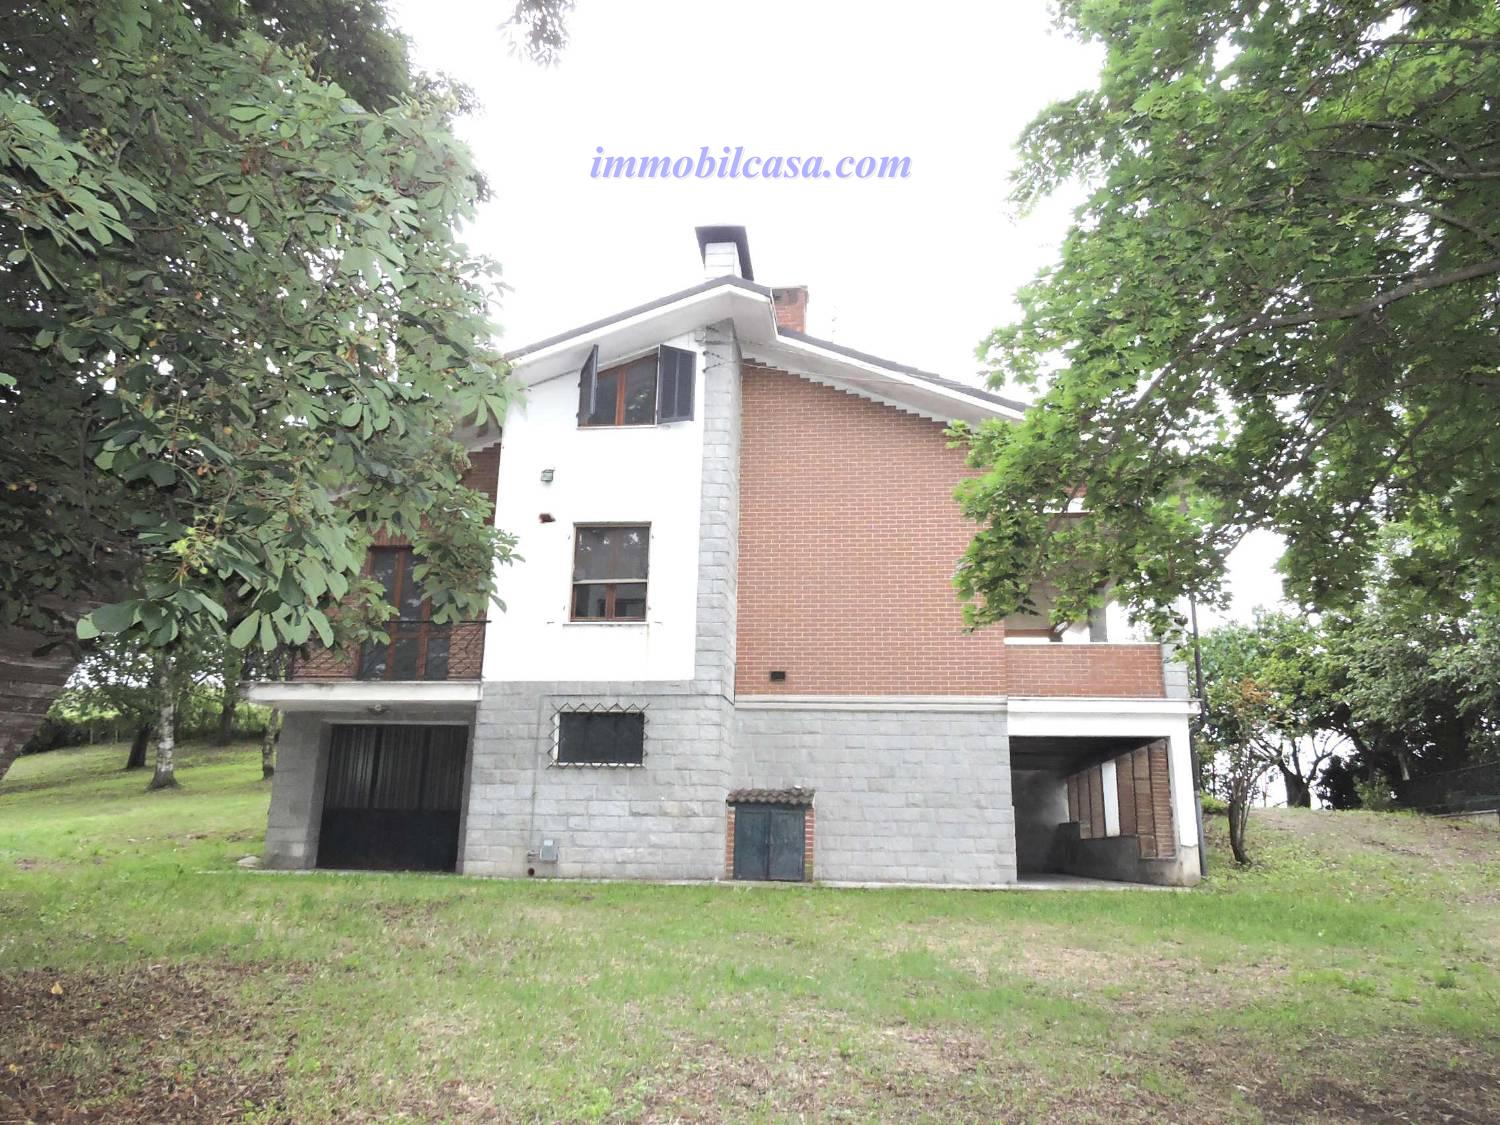 Villa in vendita a Clavesana, 6 locali, prezzo € 200.000 | PortaleAgenzieImmobiliari.it